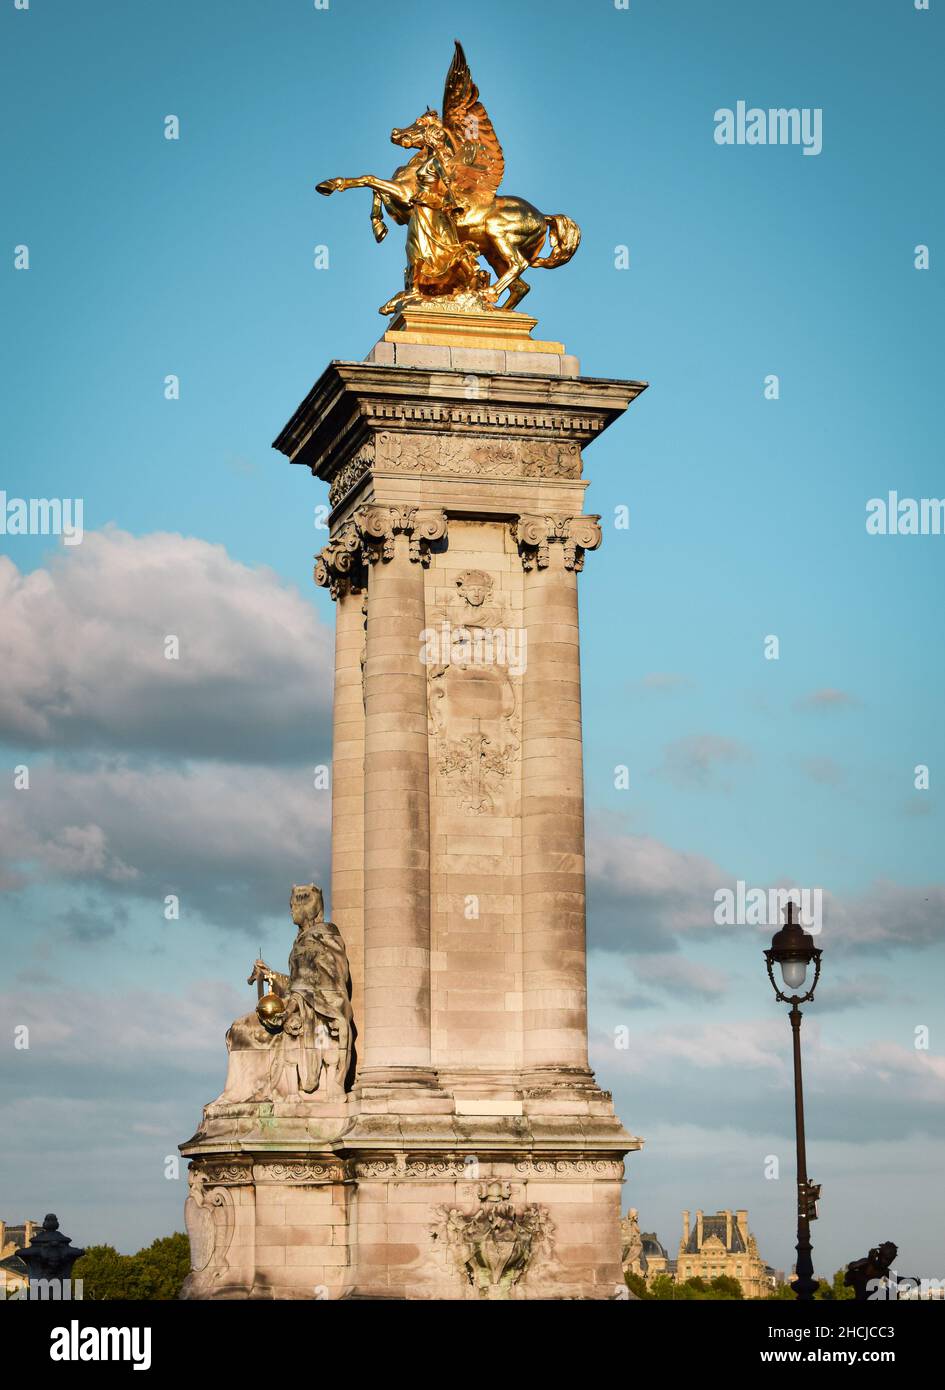 Majestuosa columna en un extremo del puente de Alejandro III en Paris con escultura de un pegaso en bronce dorado.JPG Stock Photo